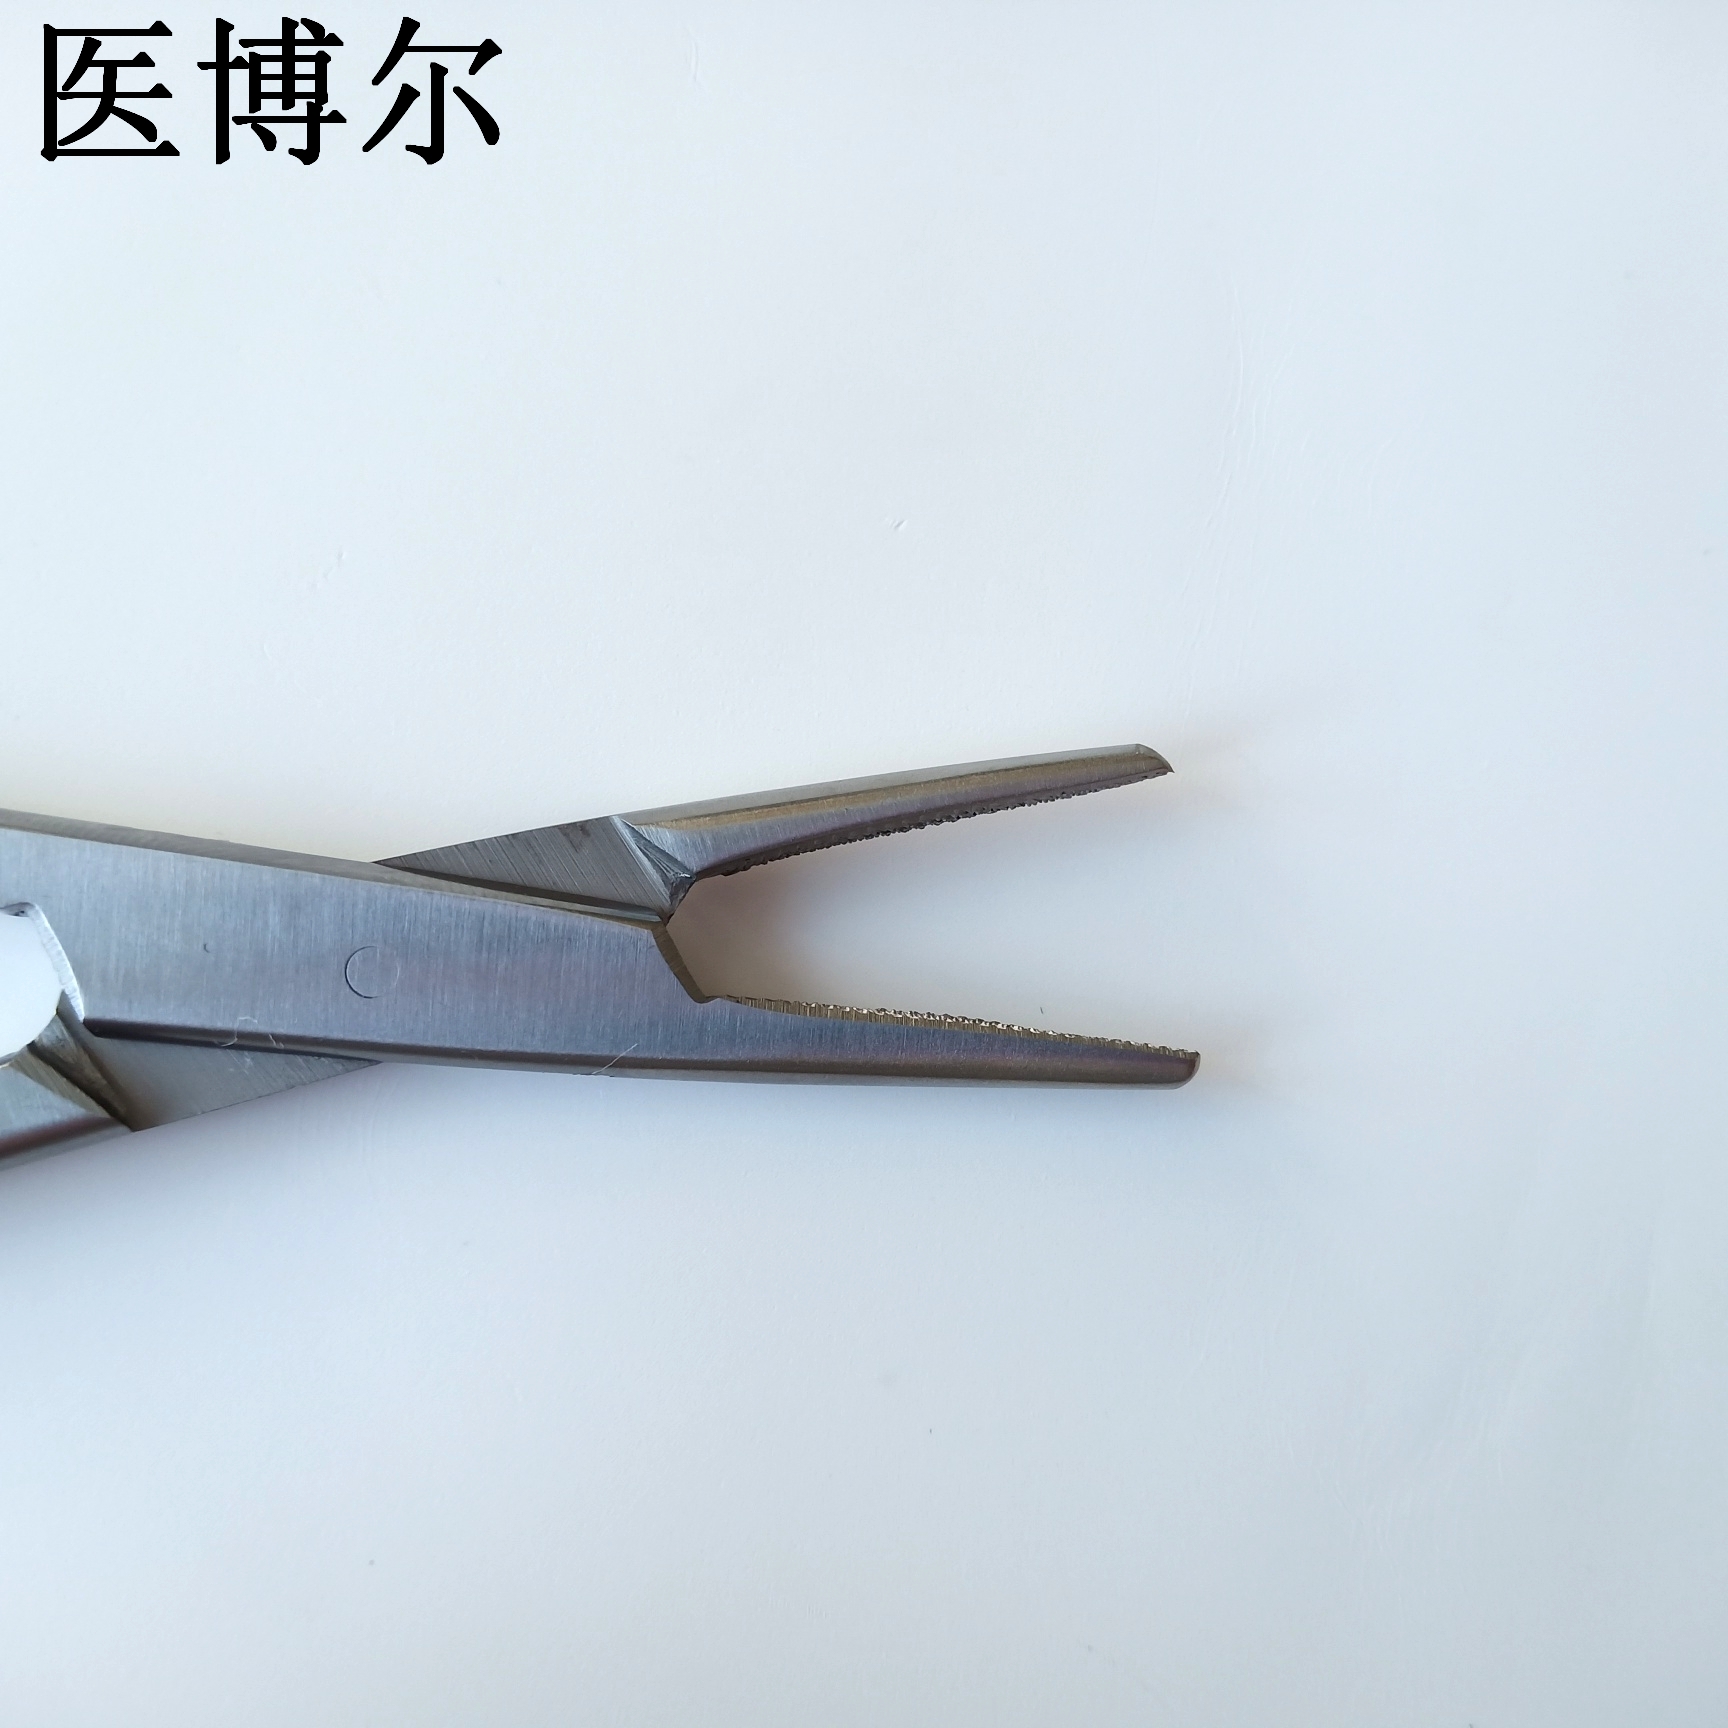 20cm粗针持针器 (7)_看图王.jpg